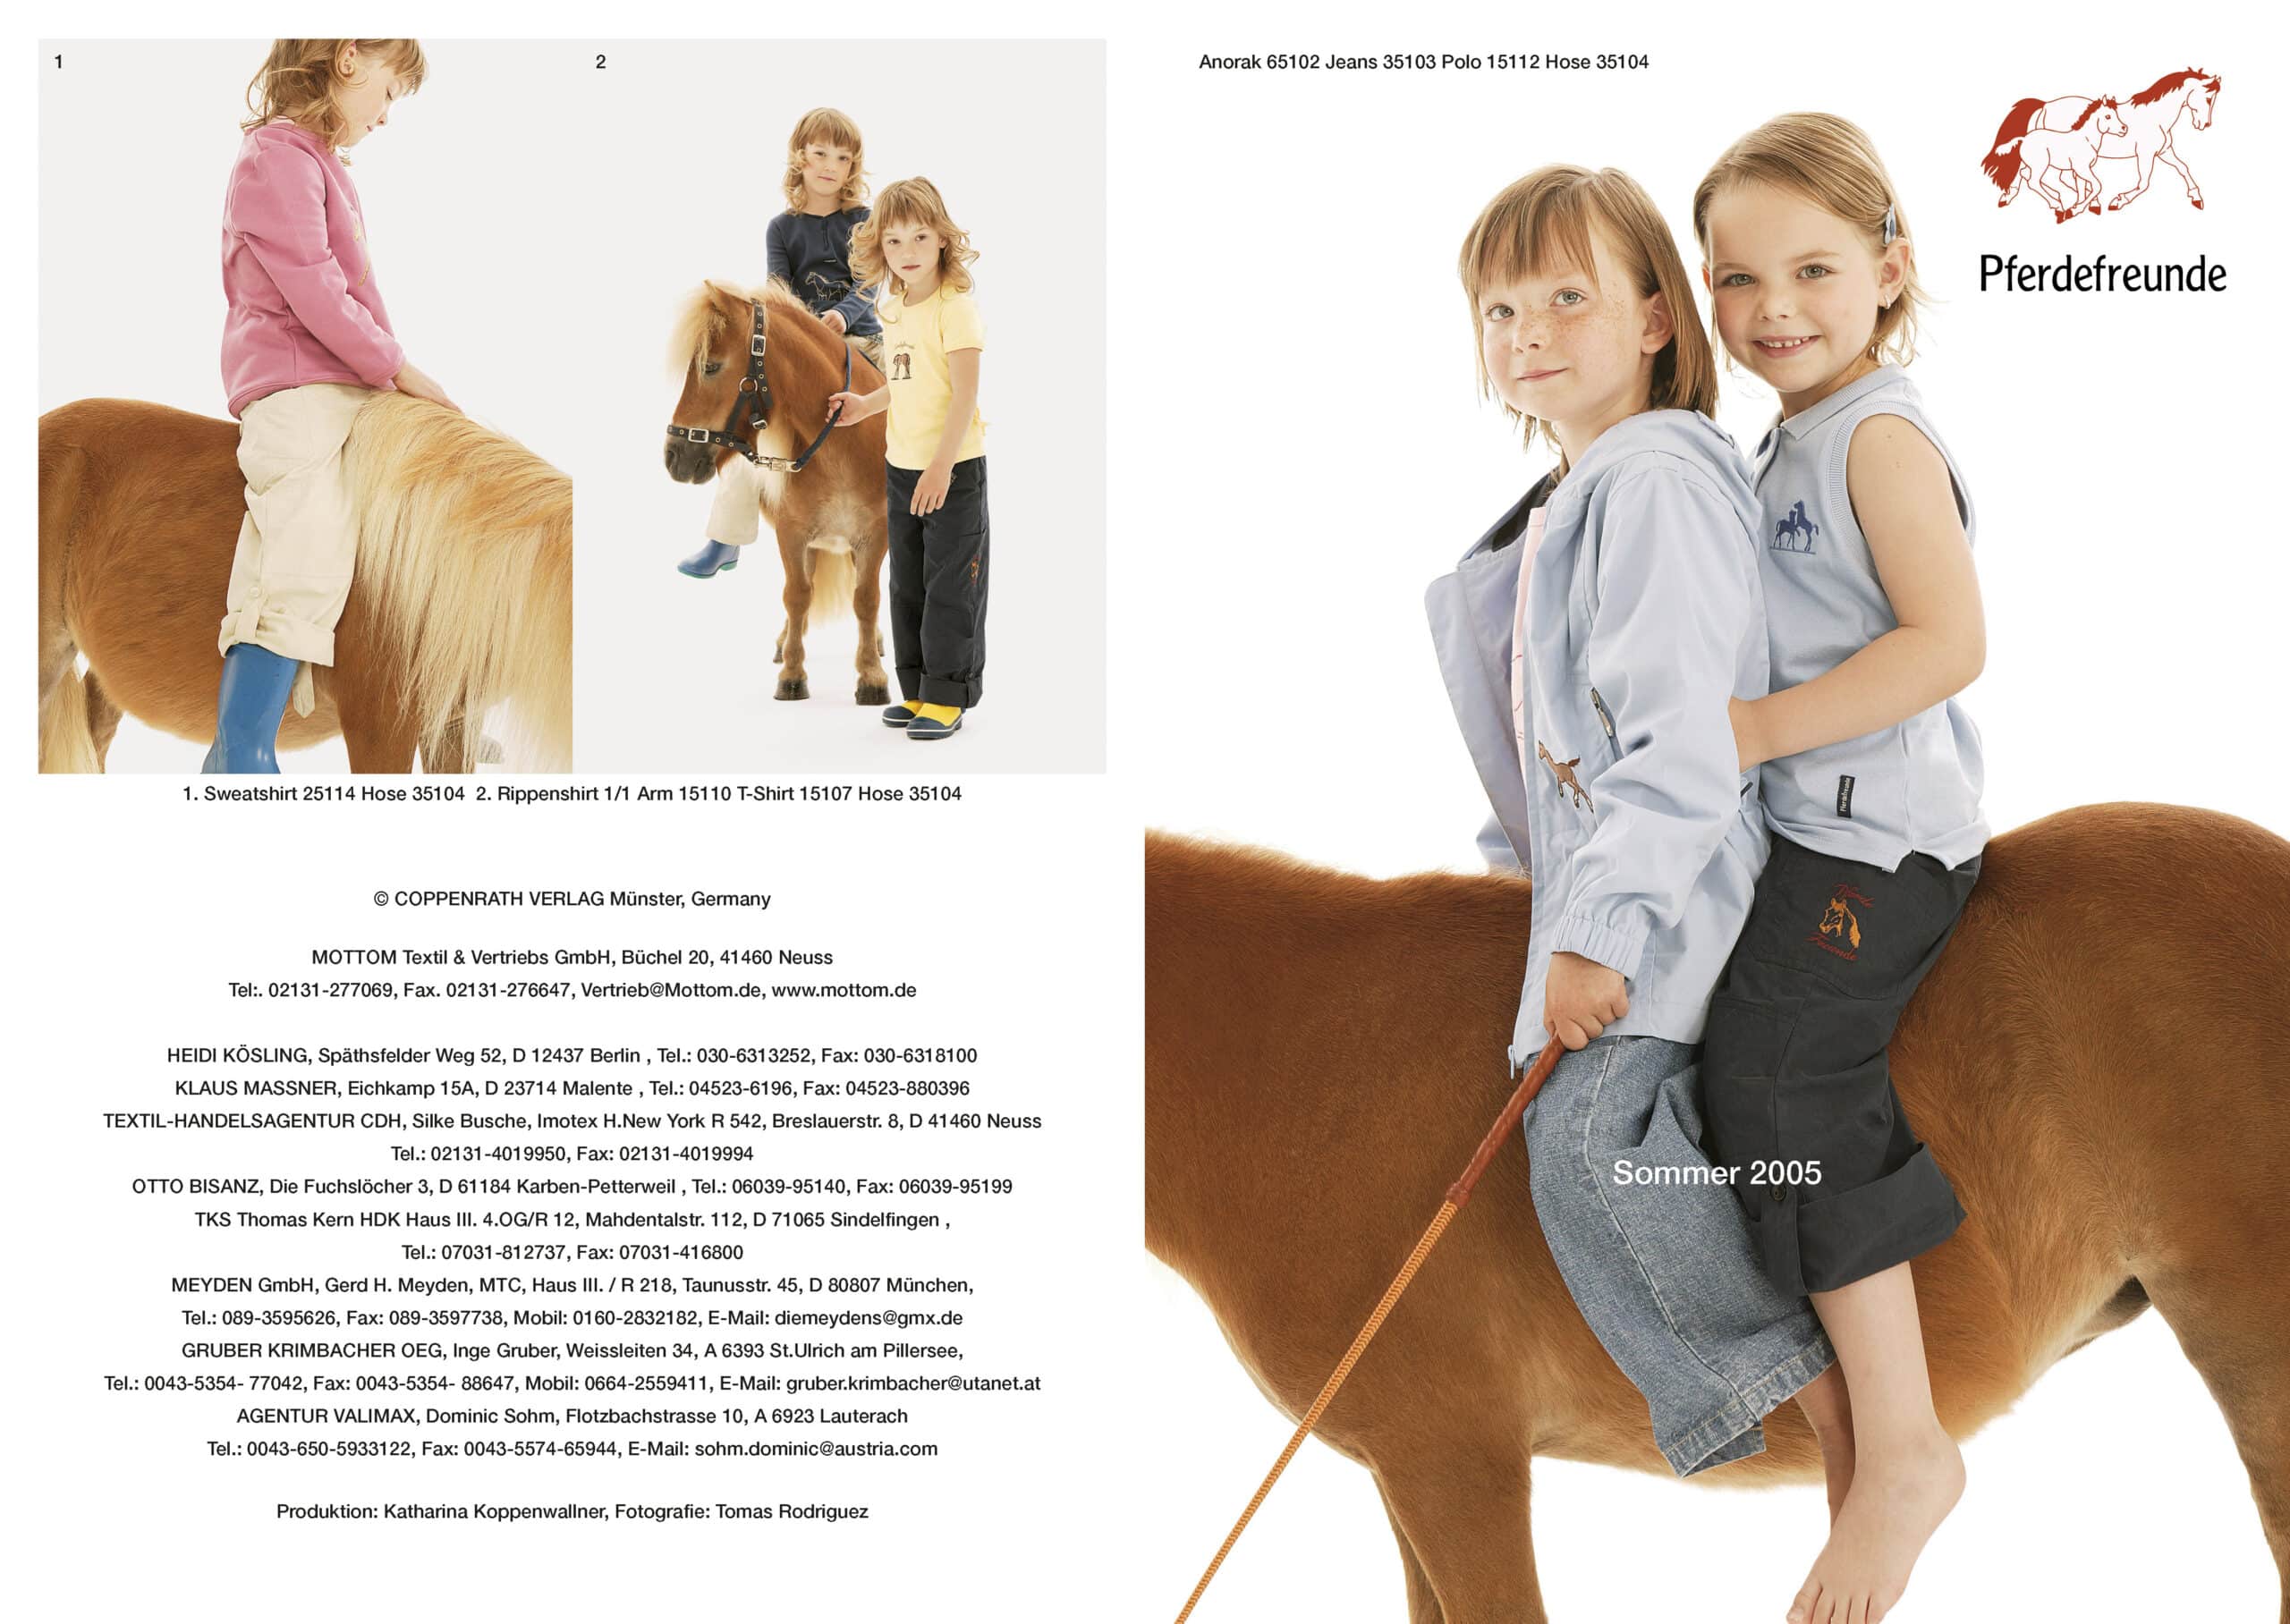 Zwei Werbefotos für einen Kinderbekleidungskatalog. Links: Ein Mädchen streichelt liebevoll ein kleines Pferd, ein kleiner Junge ist dabei. Rechts: Zwei Mädchen posieren Rücken an Rücken, beide tragen ein hellblaues Hemd mit Knopfleiste und Khakihosen. © Fotografie Tomas Rodriguez